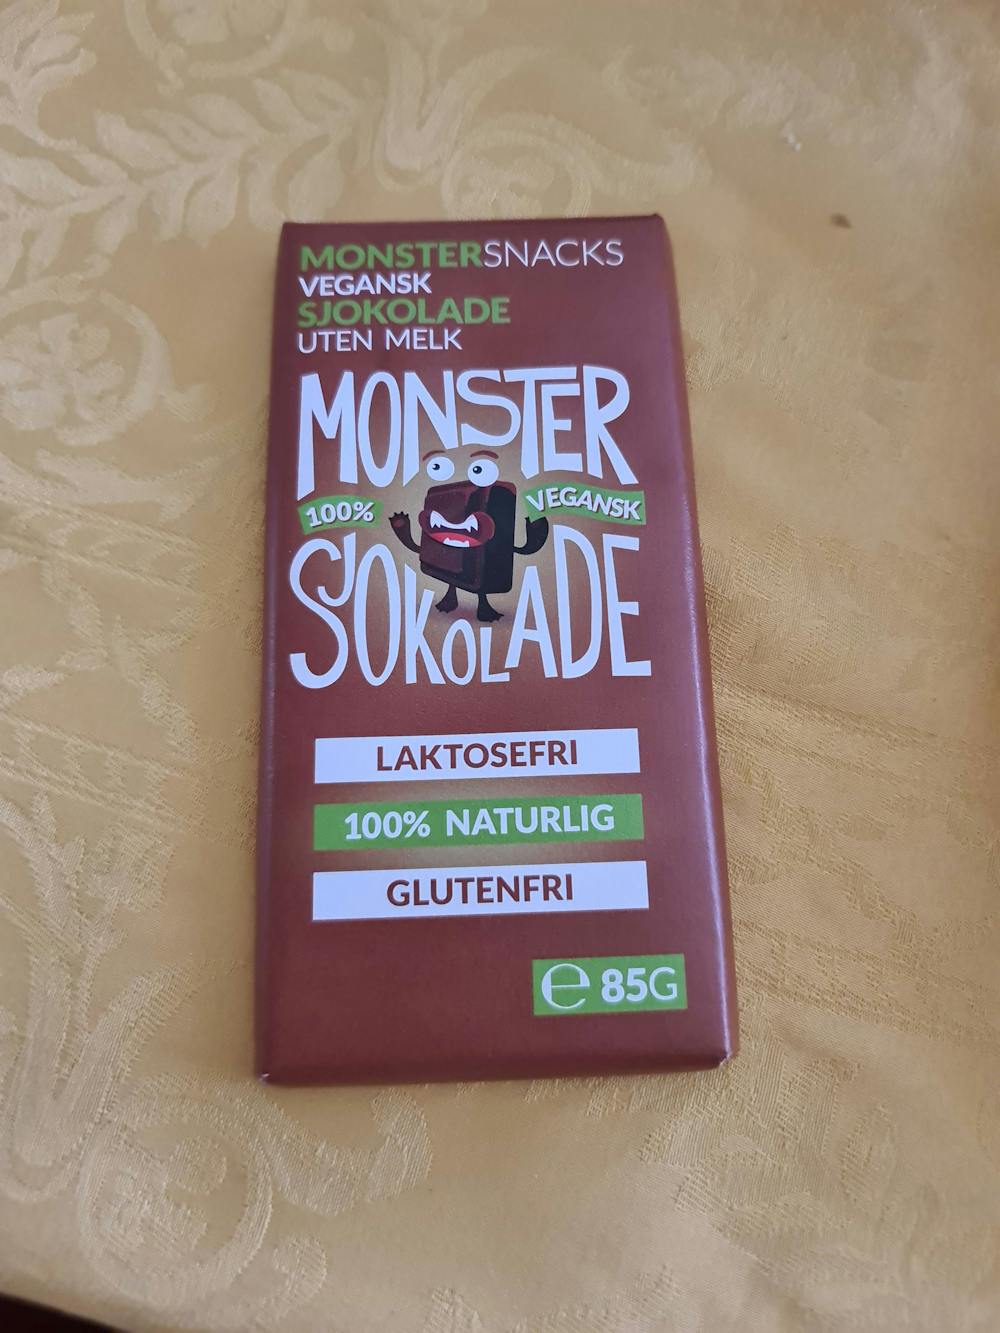 Monster sjokolade, vegansk uten melk, Monster snacks